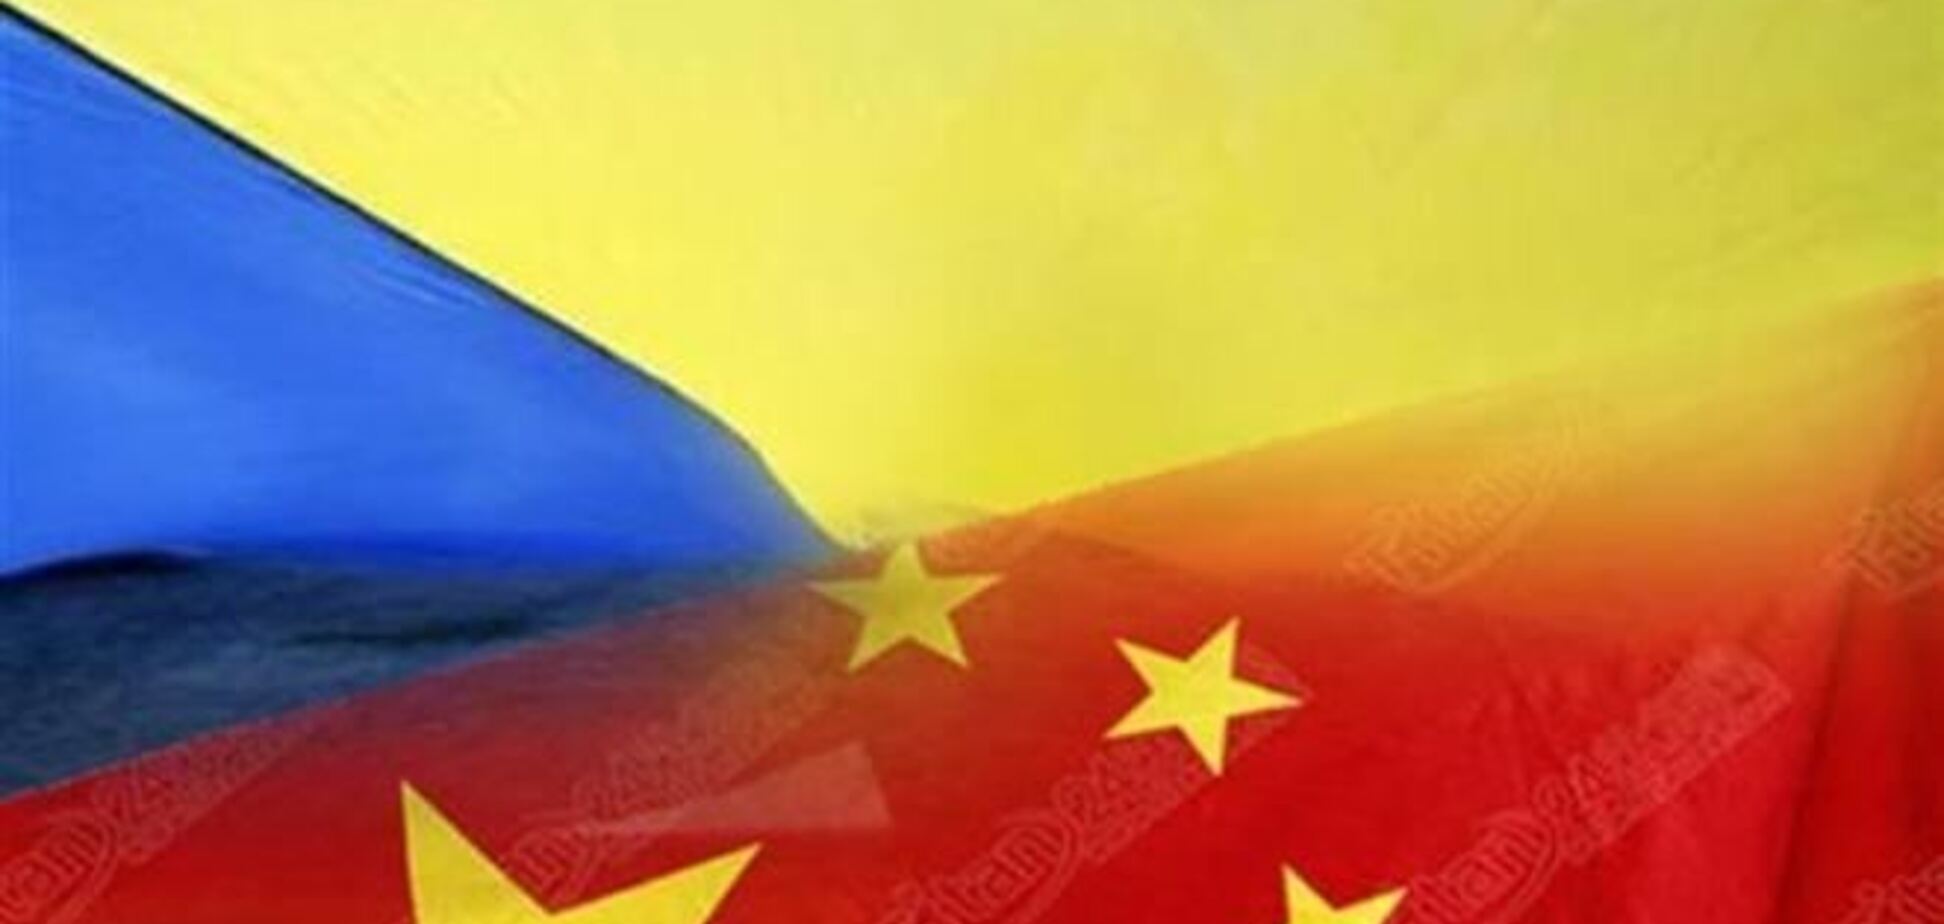 Экономист: в отличие от России и ЕС, Китай не оказывает давления на Украину, а принимает взаимовыгодные условия